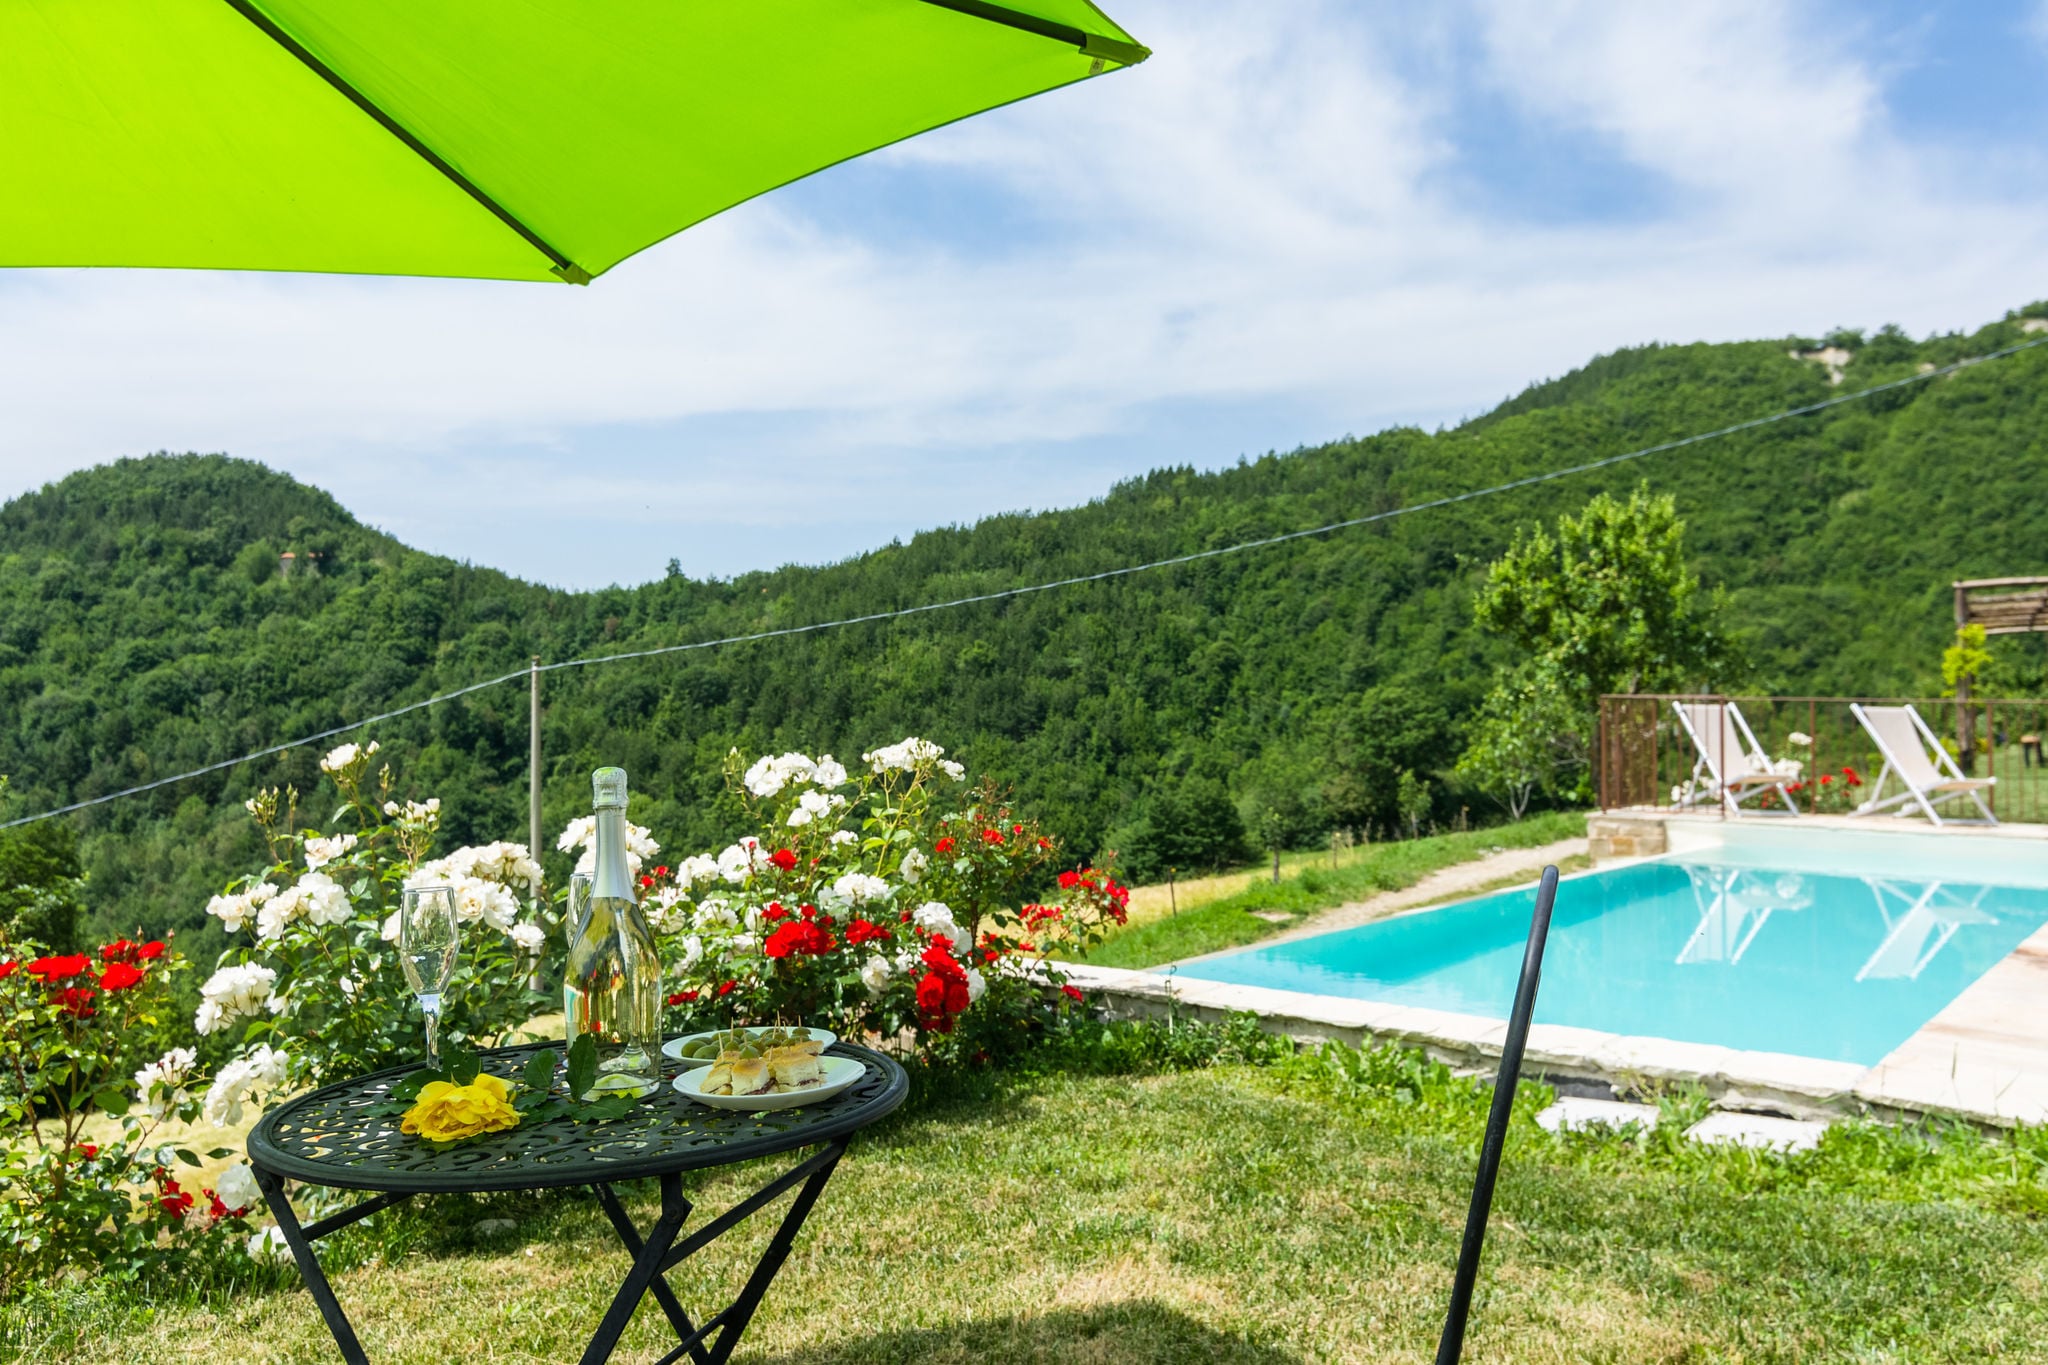 Agriturismo met zwembad in de heuvels, ongerepte natuur, wijnproeverijen

